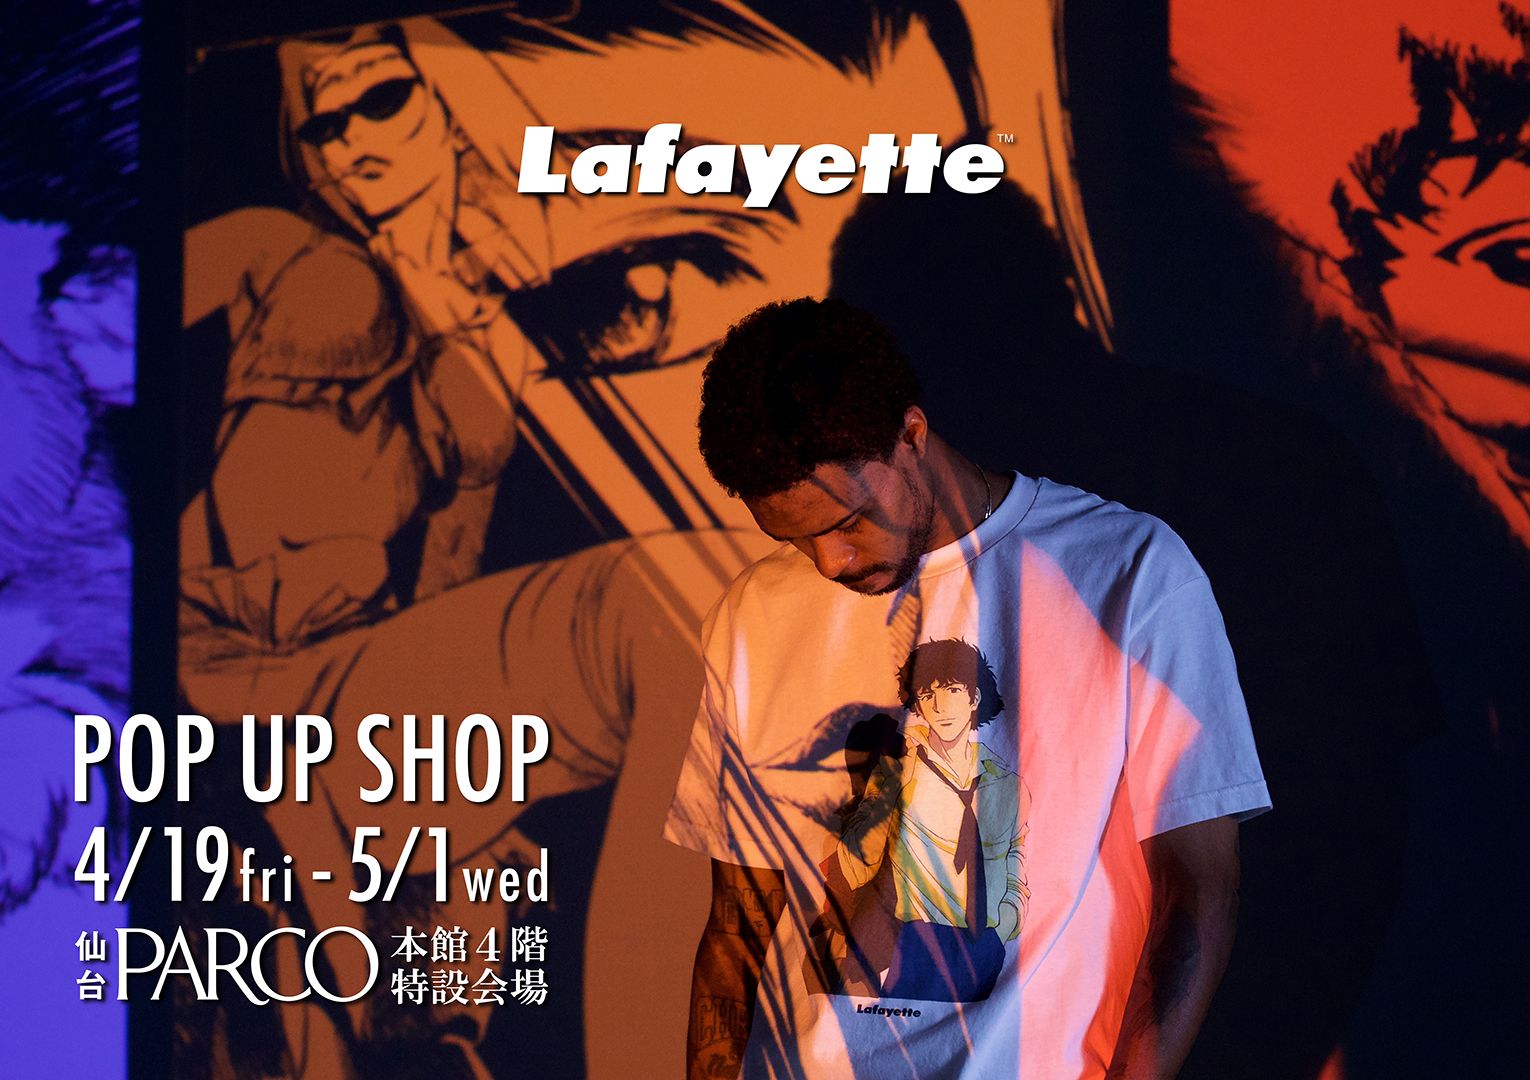 Lafayette POP UP SHOP  at SENDAI PARCO